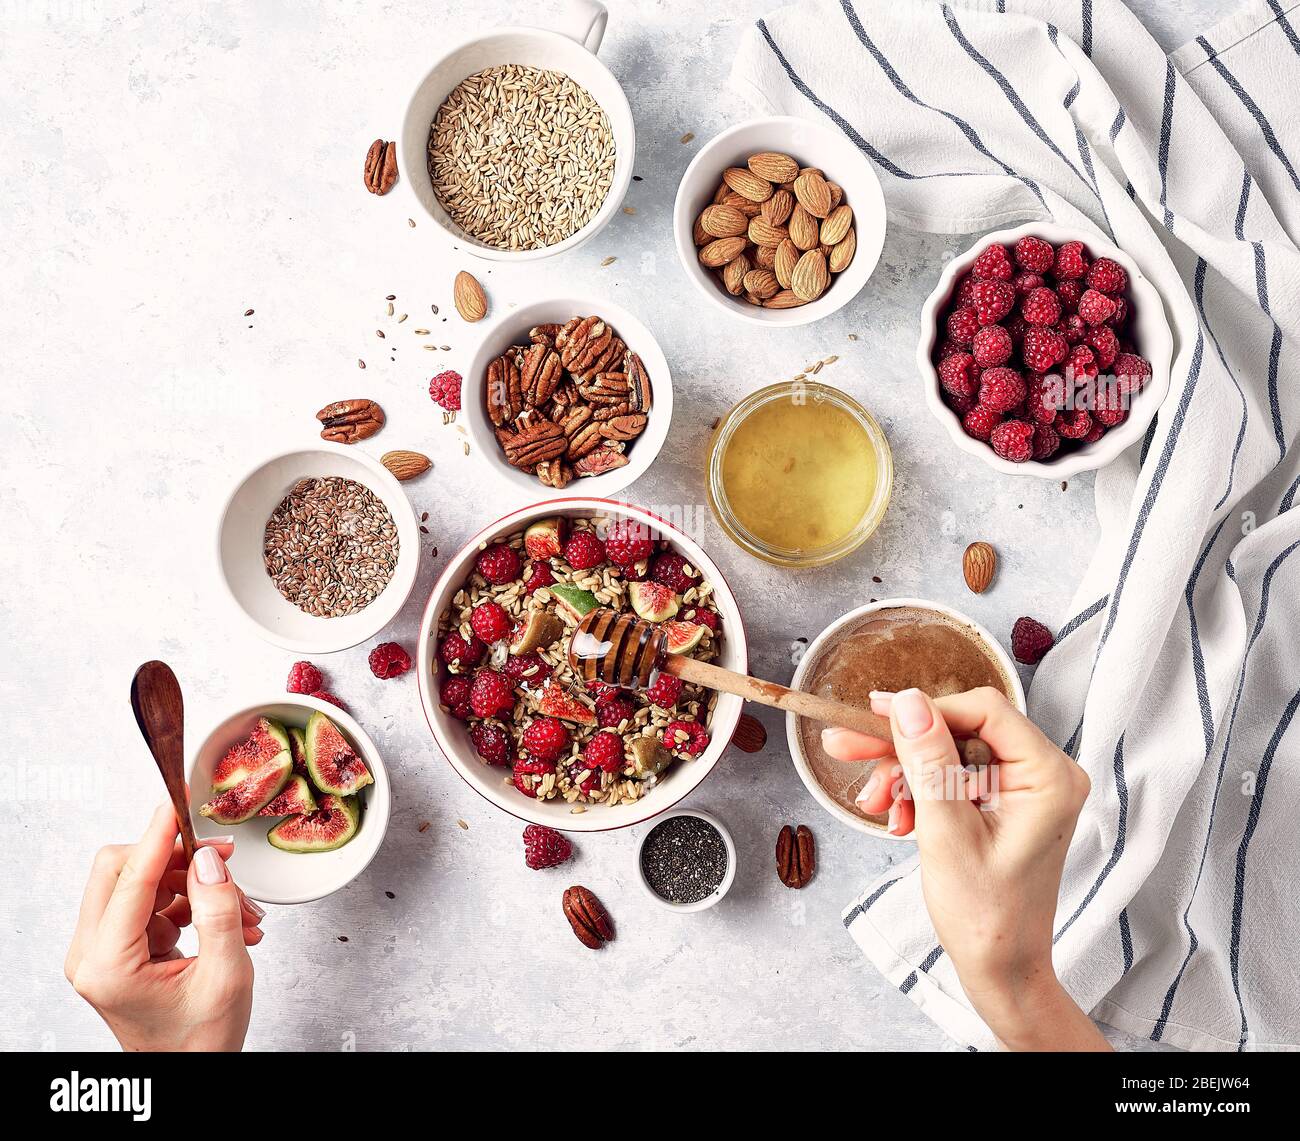 Gesundes Frühstück, Müsli mit Himbeeren, Feigen, Nüsse und Samen. Das Konzept einer gesunden Lebensweise, Ernährung. Stockfoto